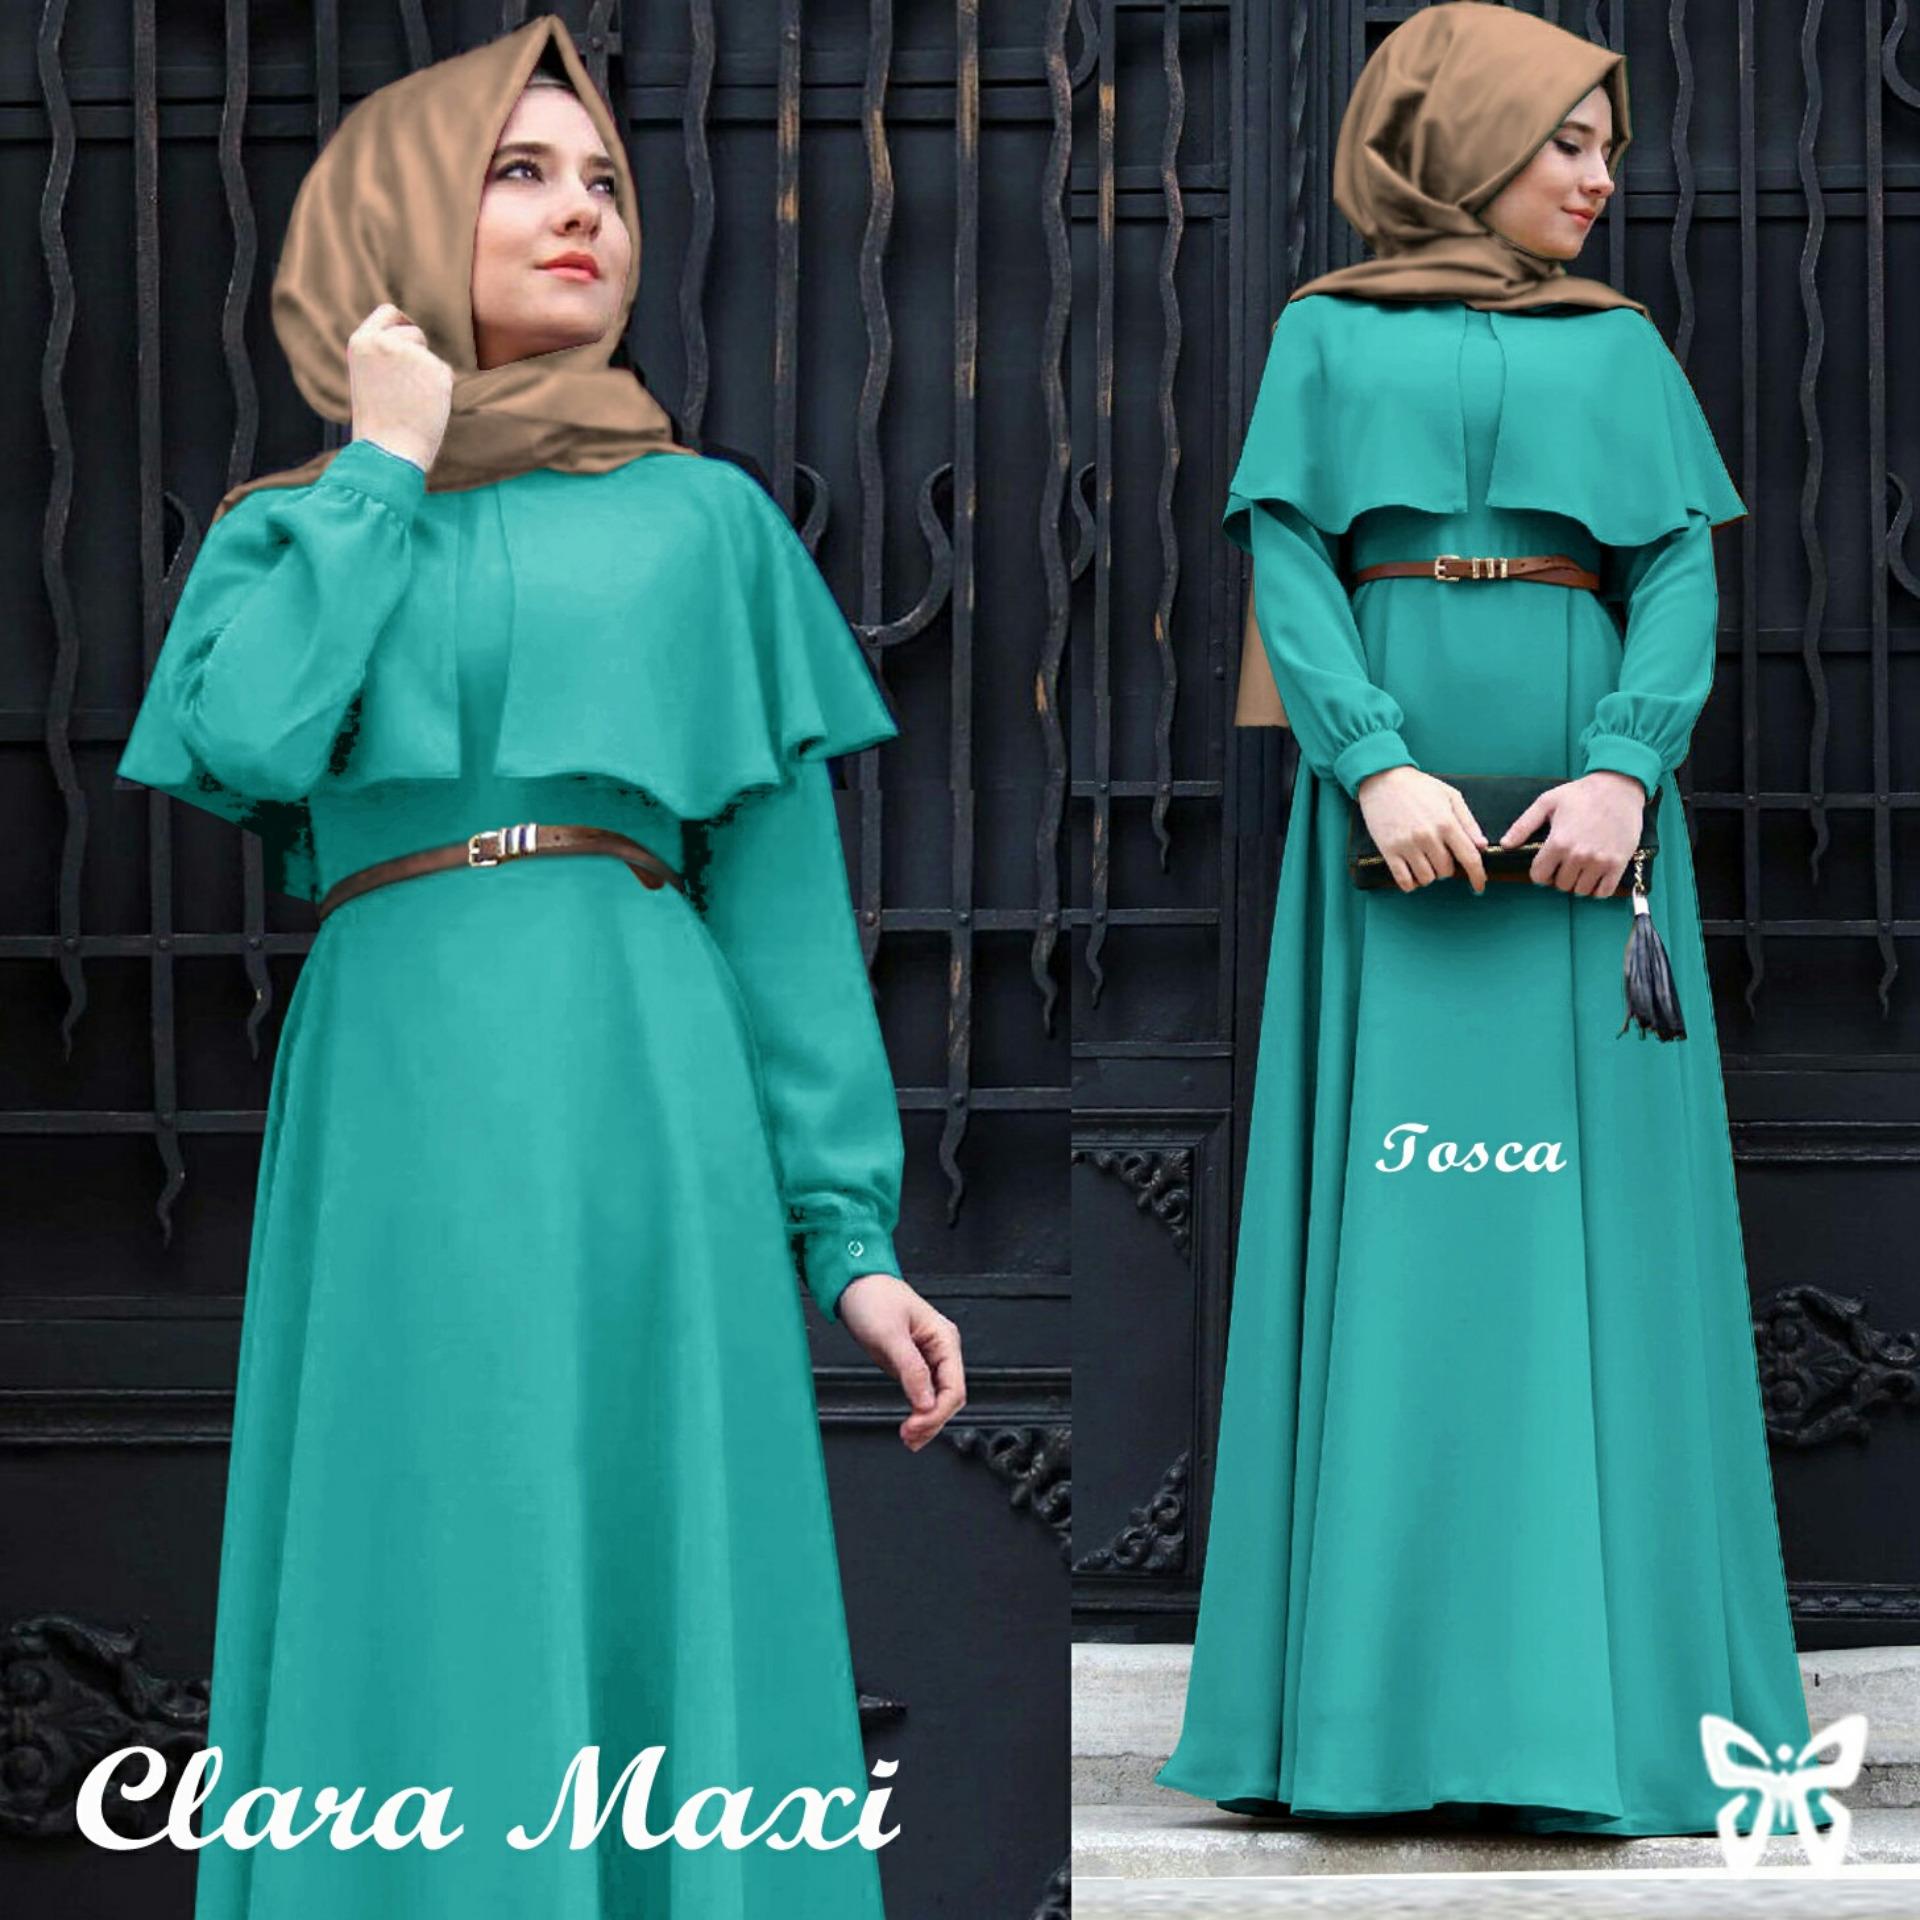 UC [Best Seller] Baju Maxi Dress GAMIS Kirana / Hijab Muslim / Muslim Syari Syar'i Hijab Clara / Busana Muslimah / Kebaya Modern (Aracl)  SS - Maroon - A0007 D2C